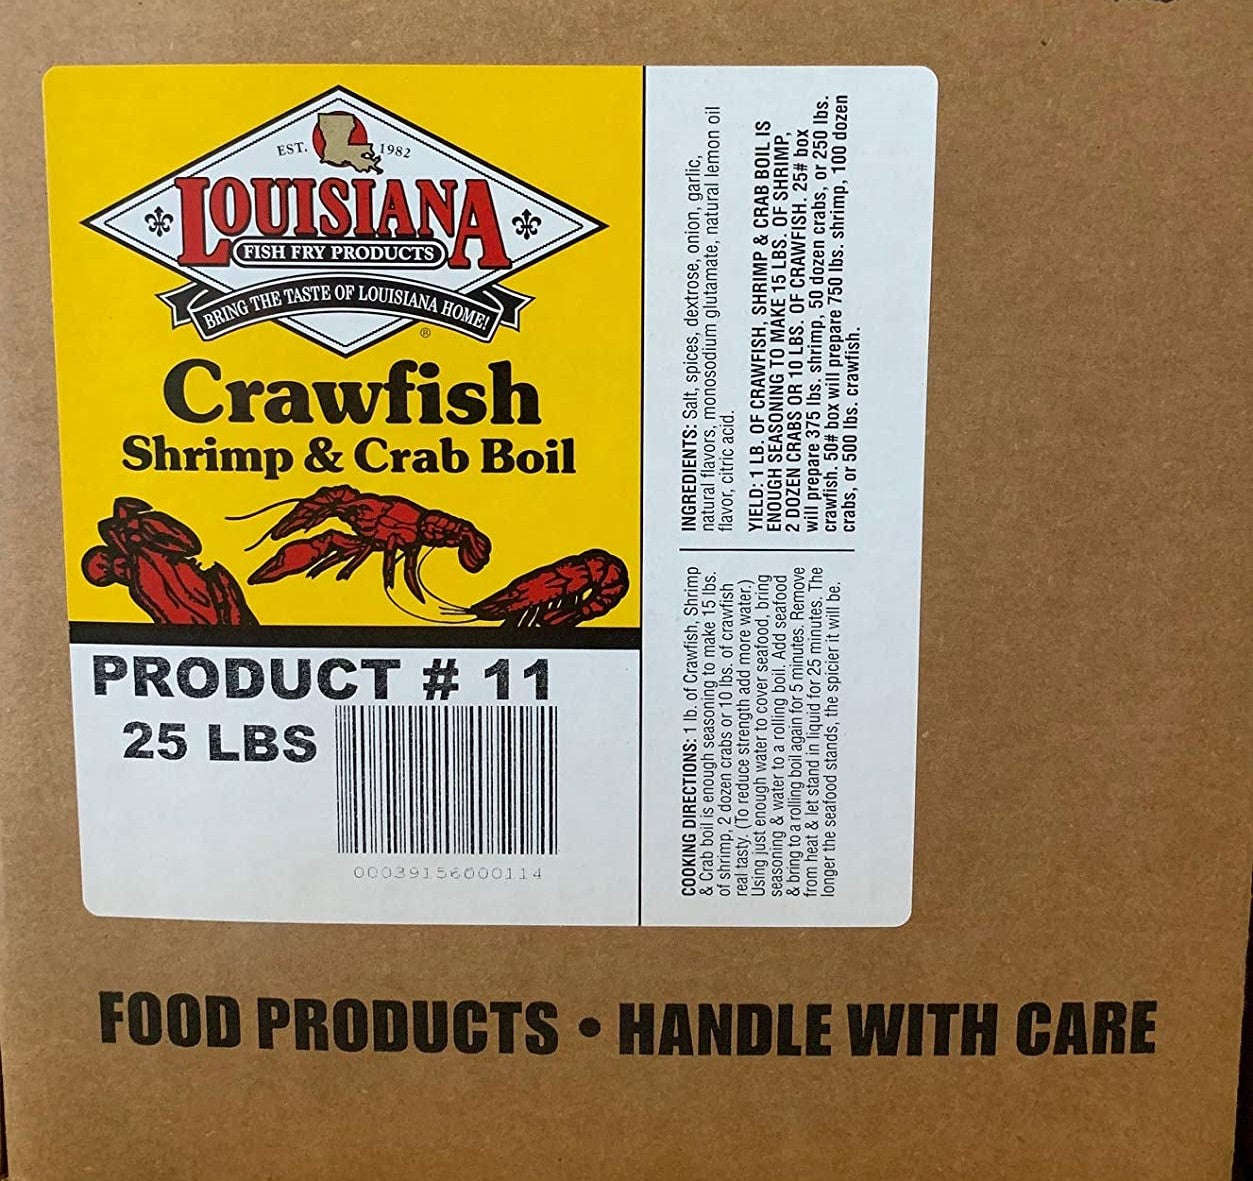  Louisiana Fish Fry Company Dirty Rice Dinner Mix, 8